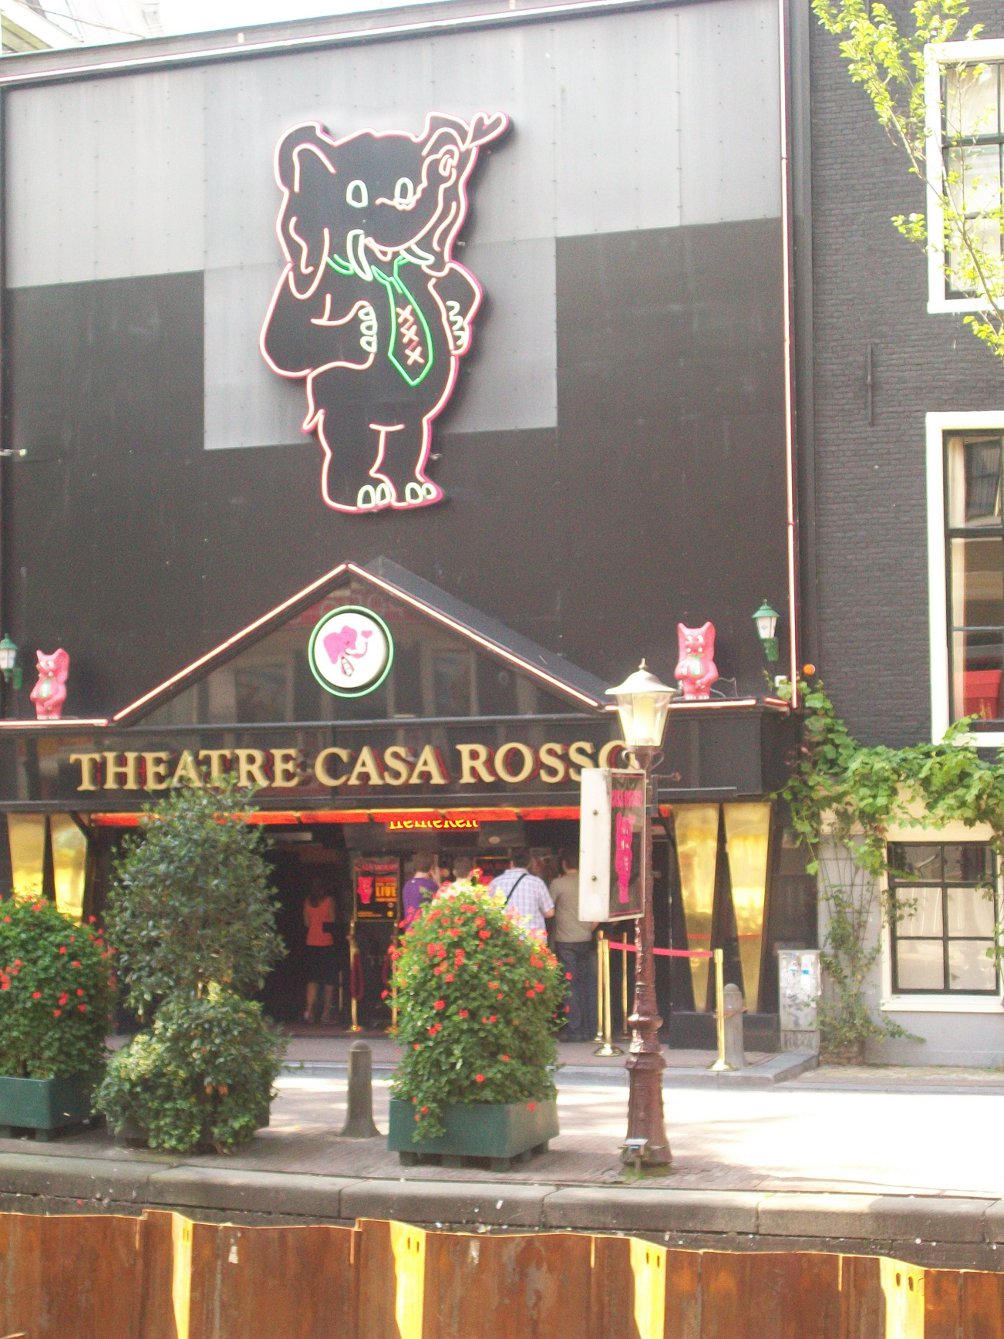 Teatro Casa Rosso